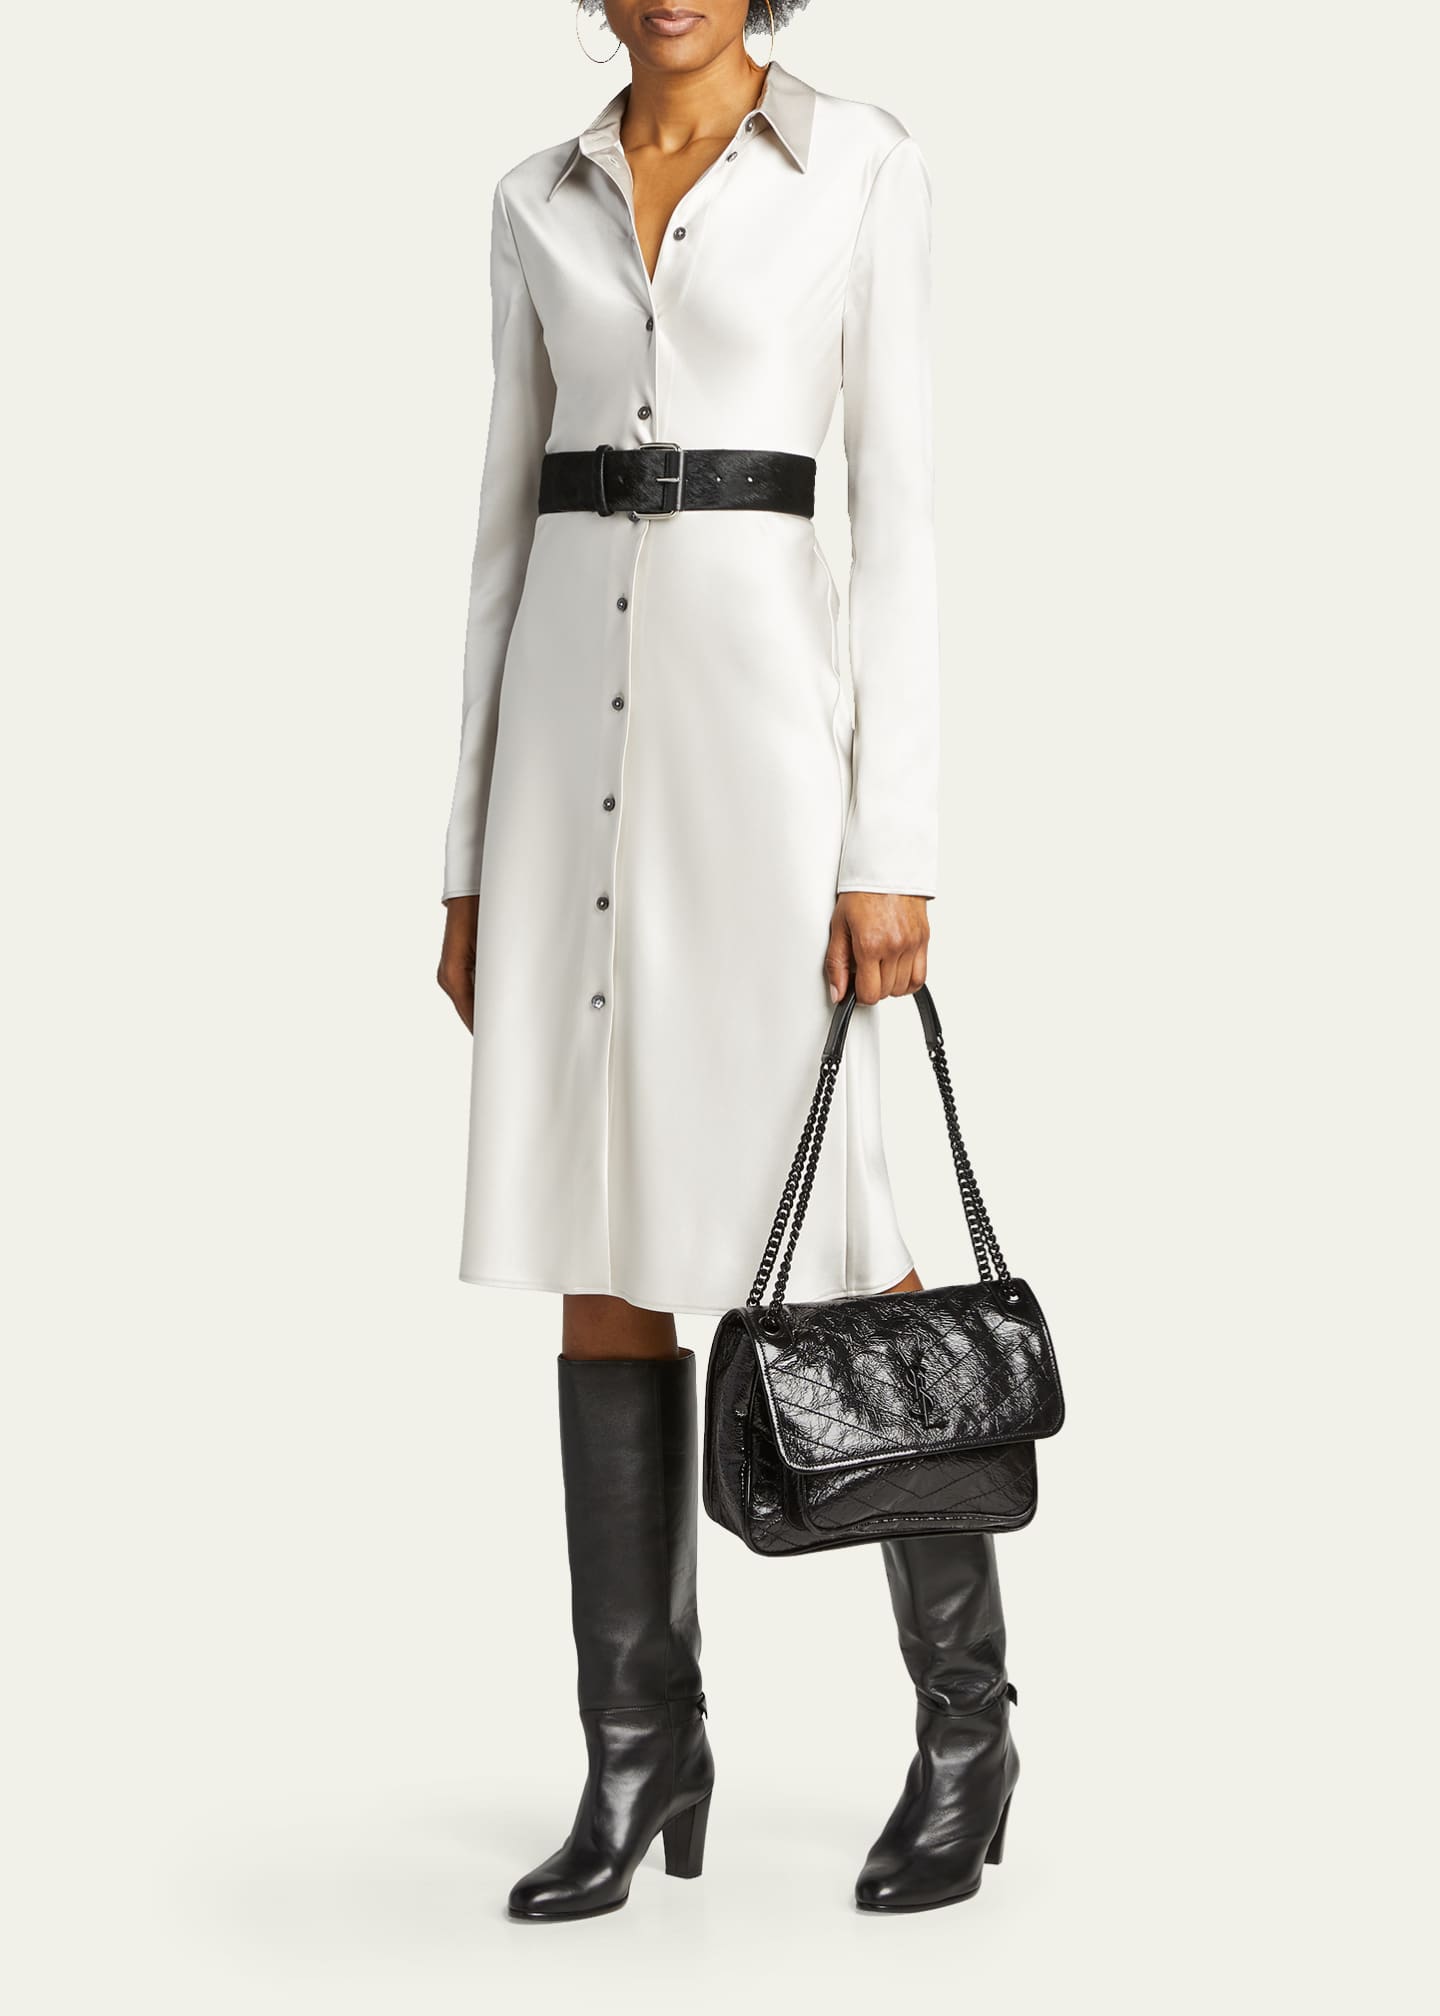 Saint Laurent Niki Medium Flap YSL Shoulder Bag in Crinkled Leather Image 5 of 5